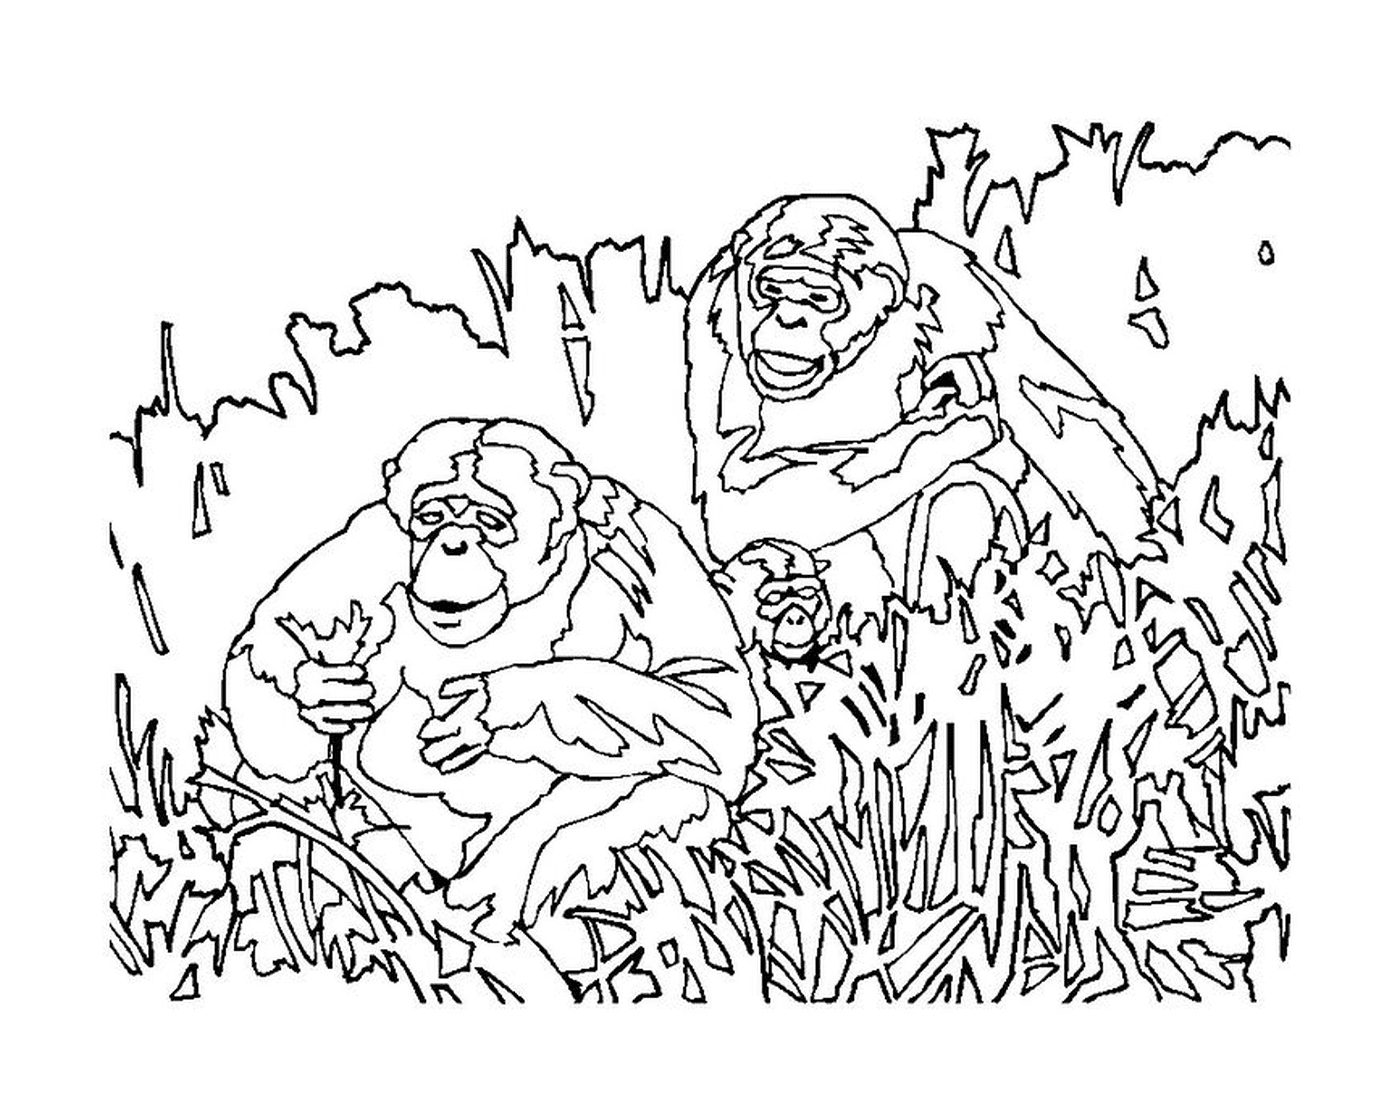  बंदर घास में बैठे हैं 